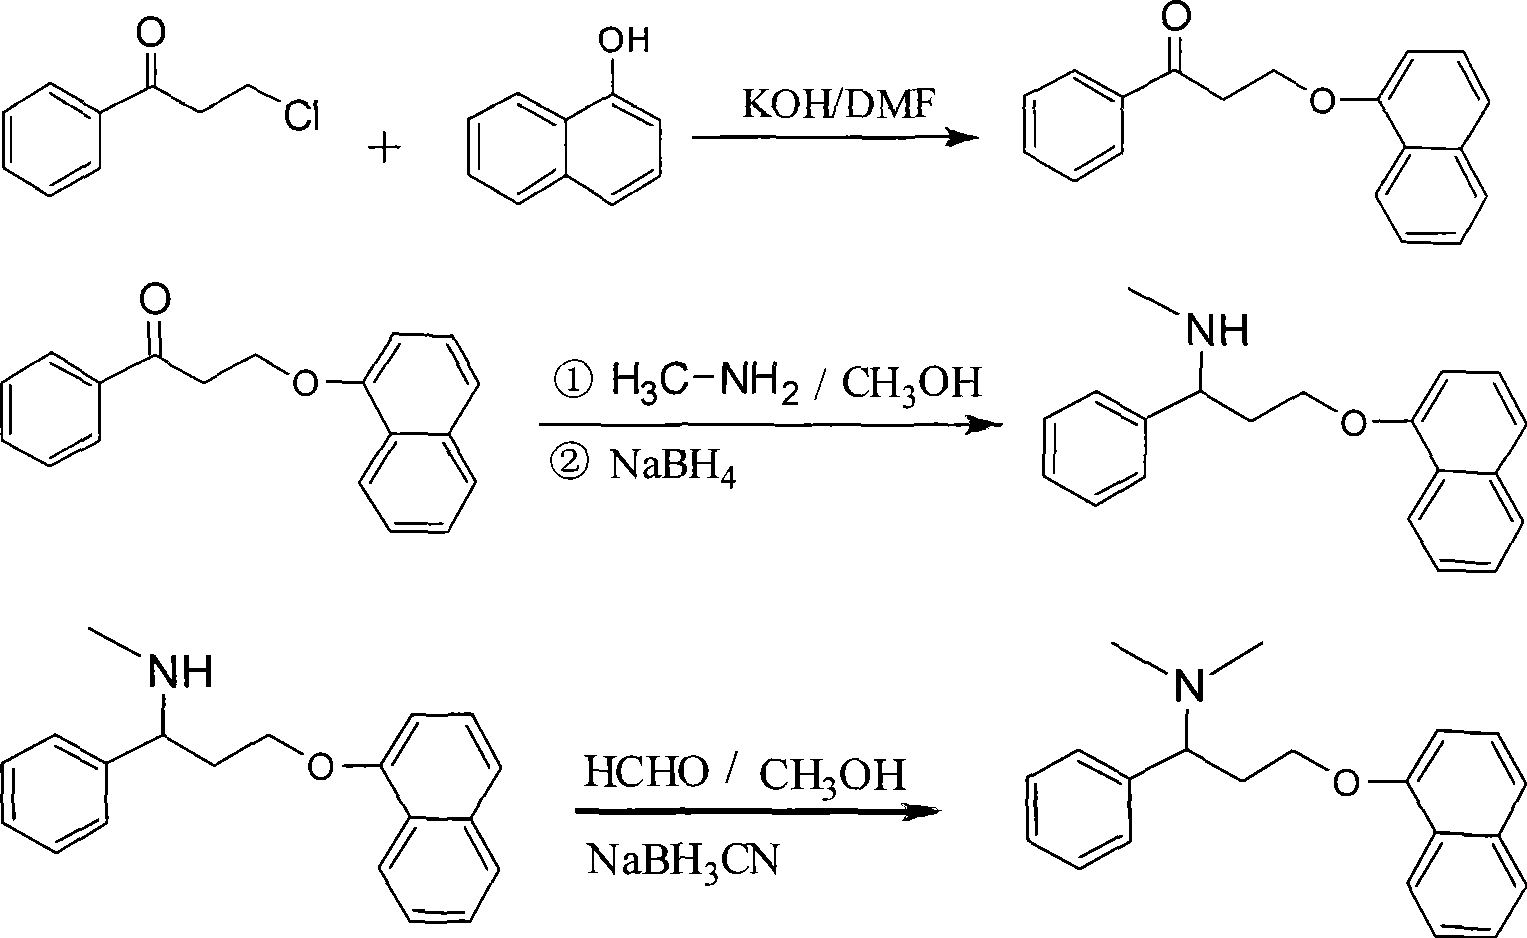 Preparation of N,N-dimethyl-1-phenyl-3-(1-naphthoxy) propanamine